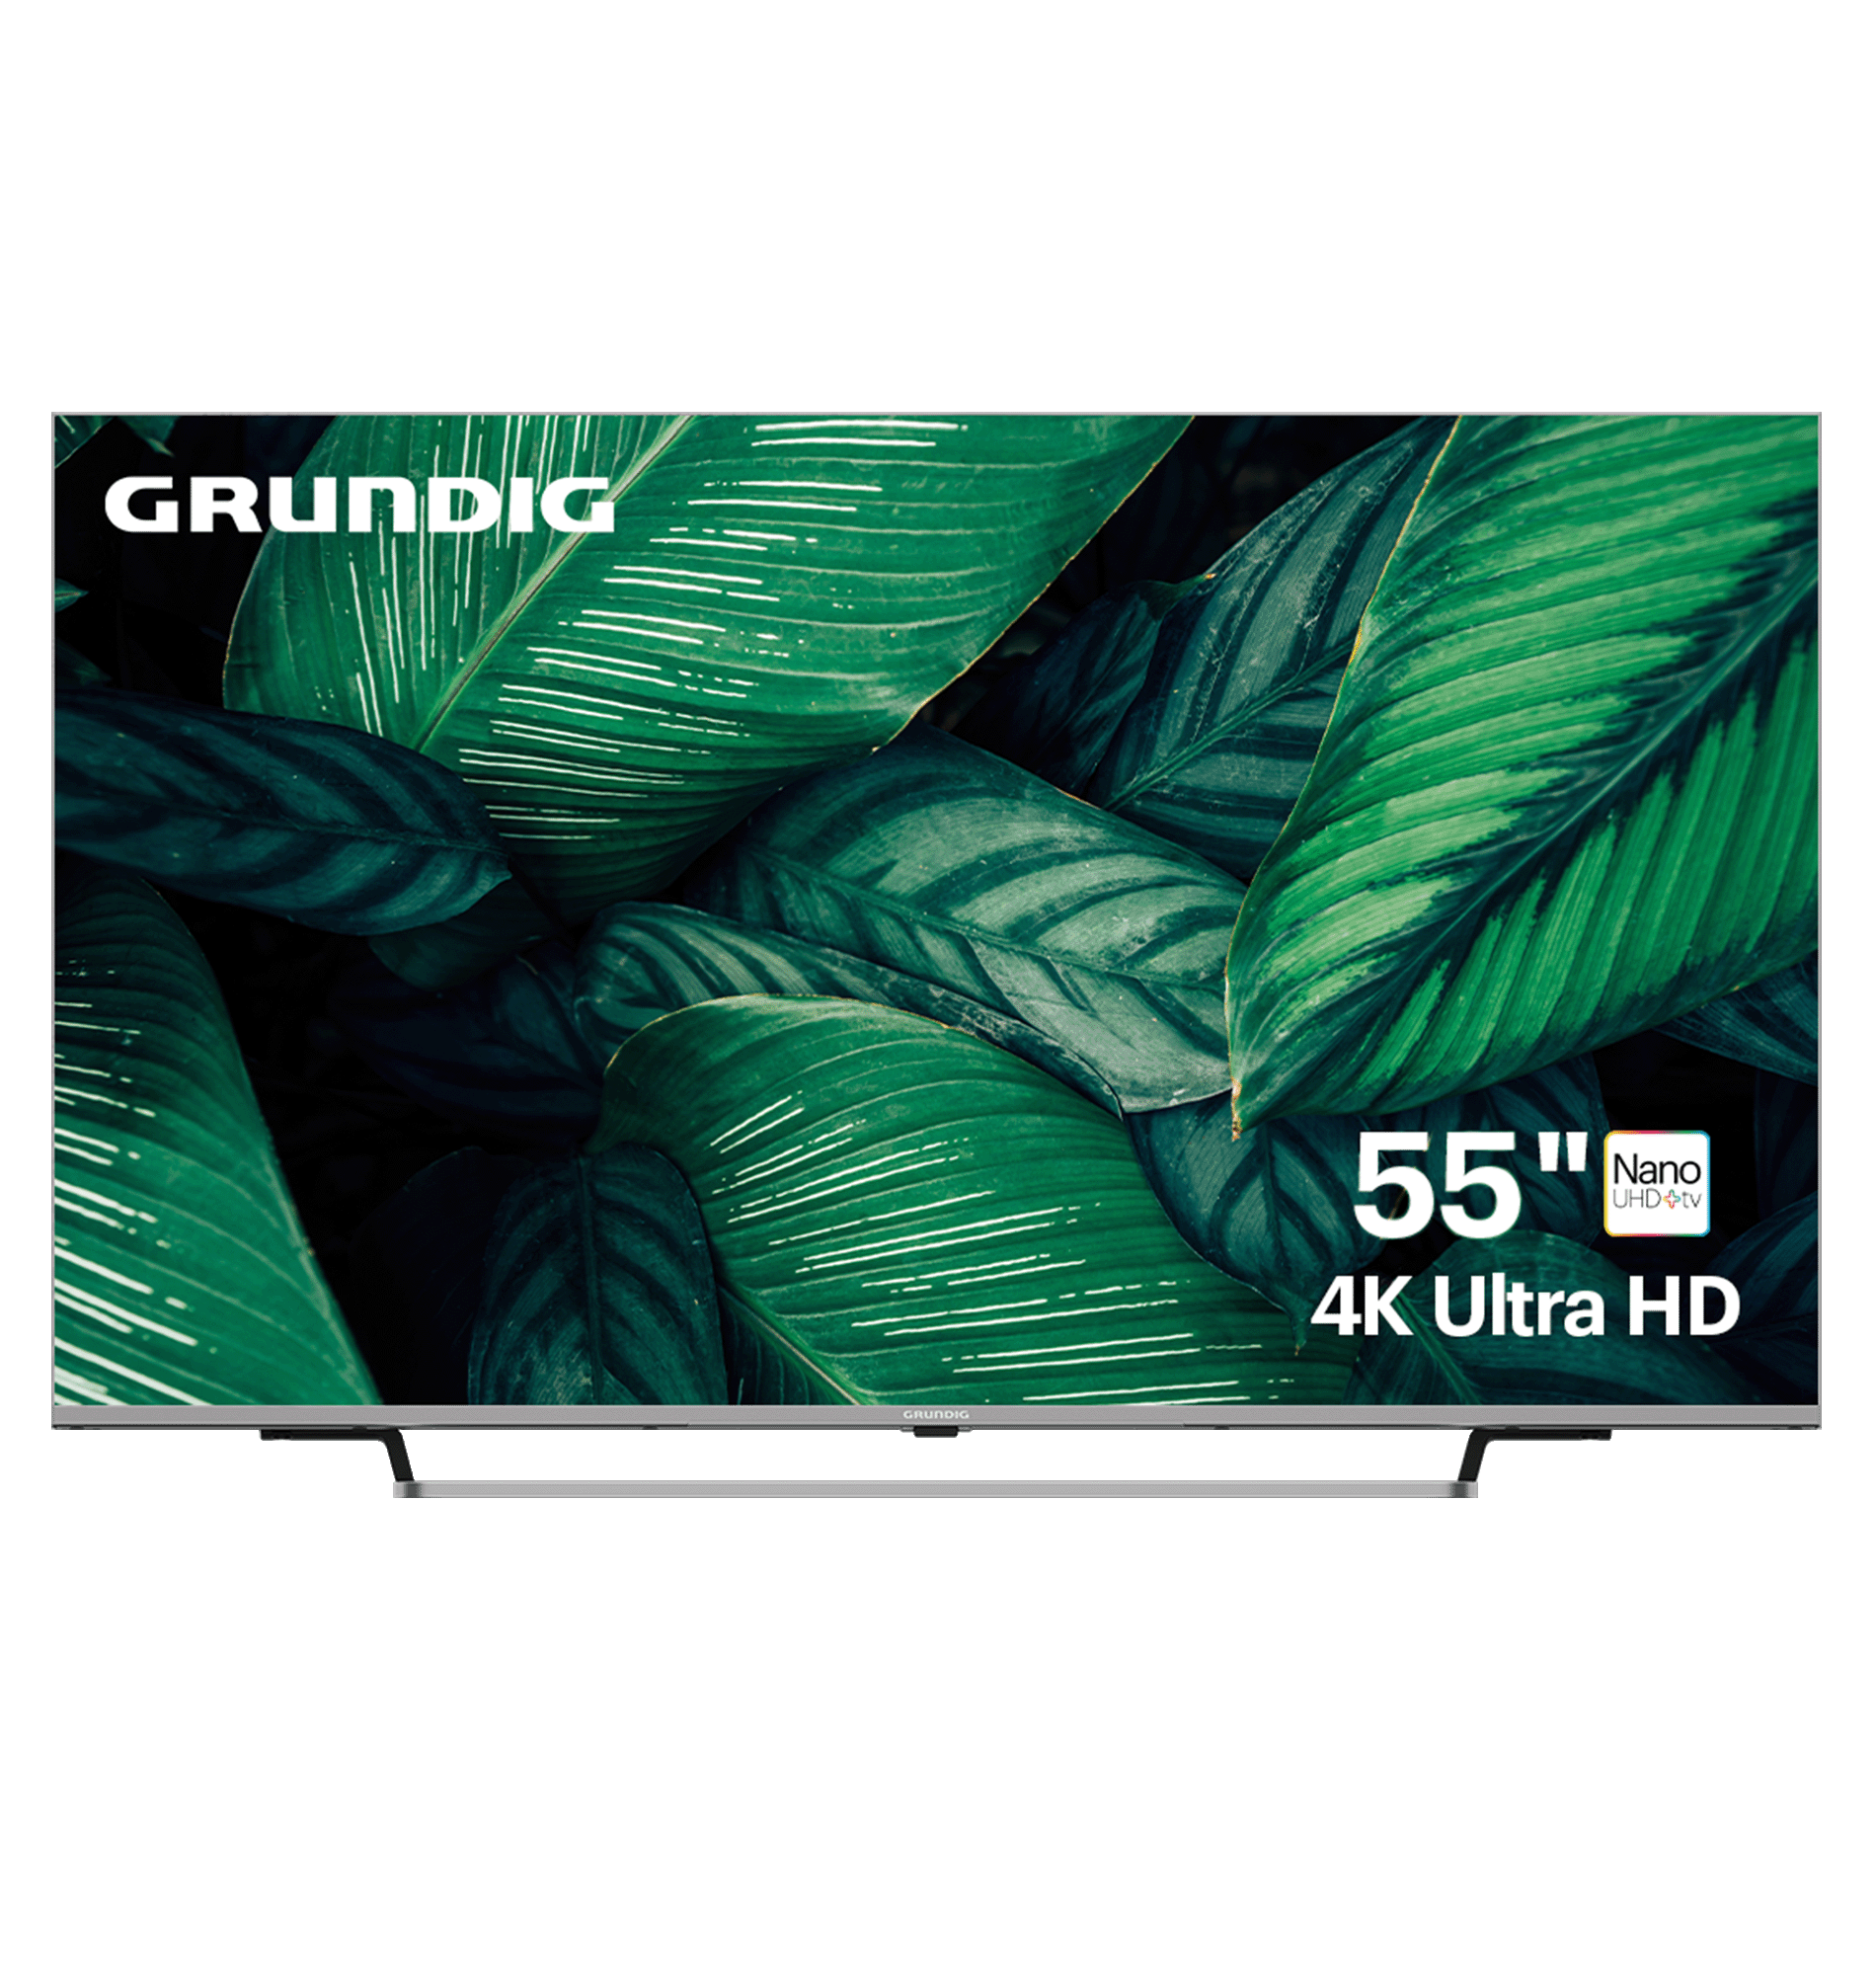 Телевизор Grundig 55 NANO GH 8100, 55"(139 см), UHD 4K, купить в Москве, цены в интернет-магазинах на Мегамаркет